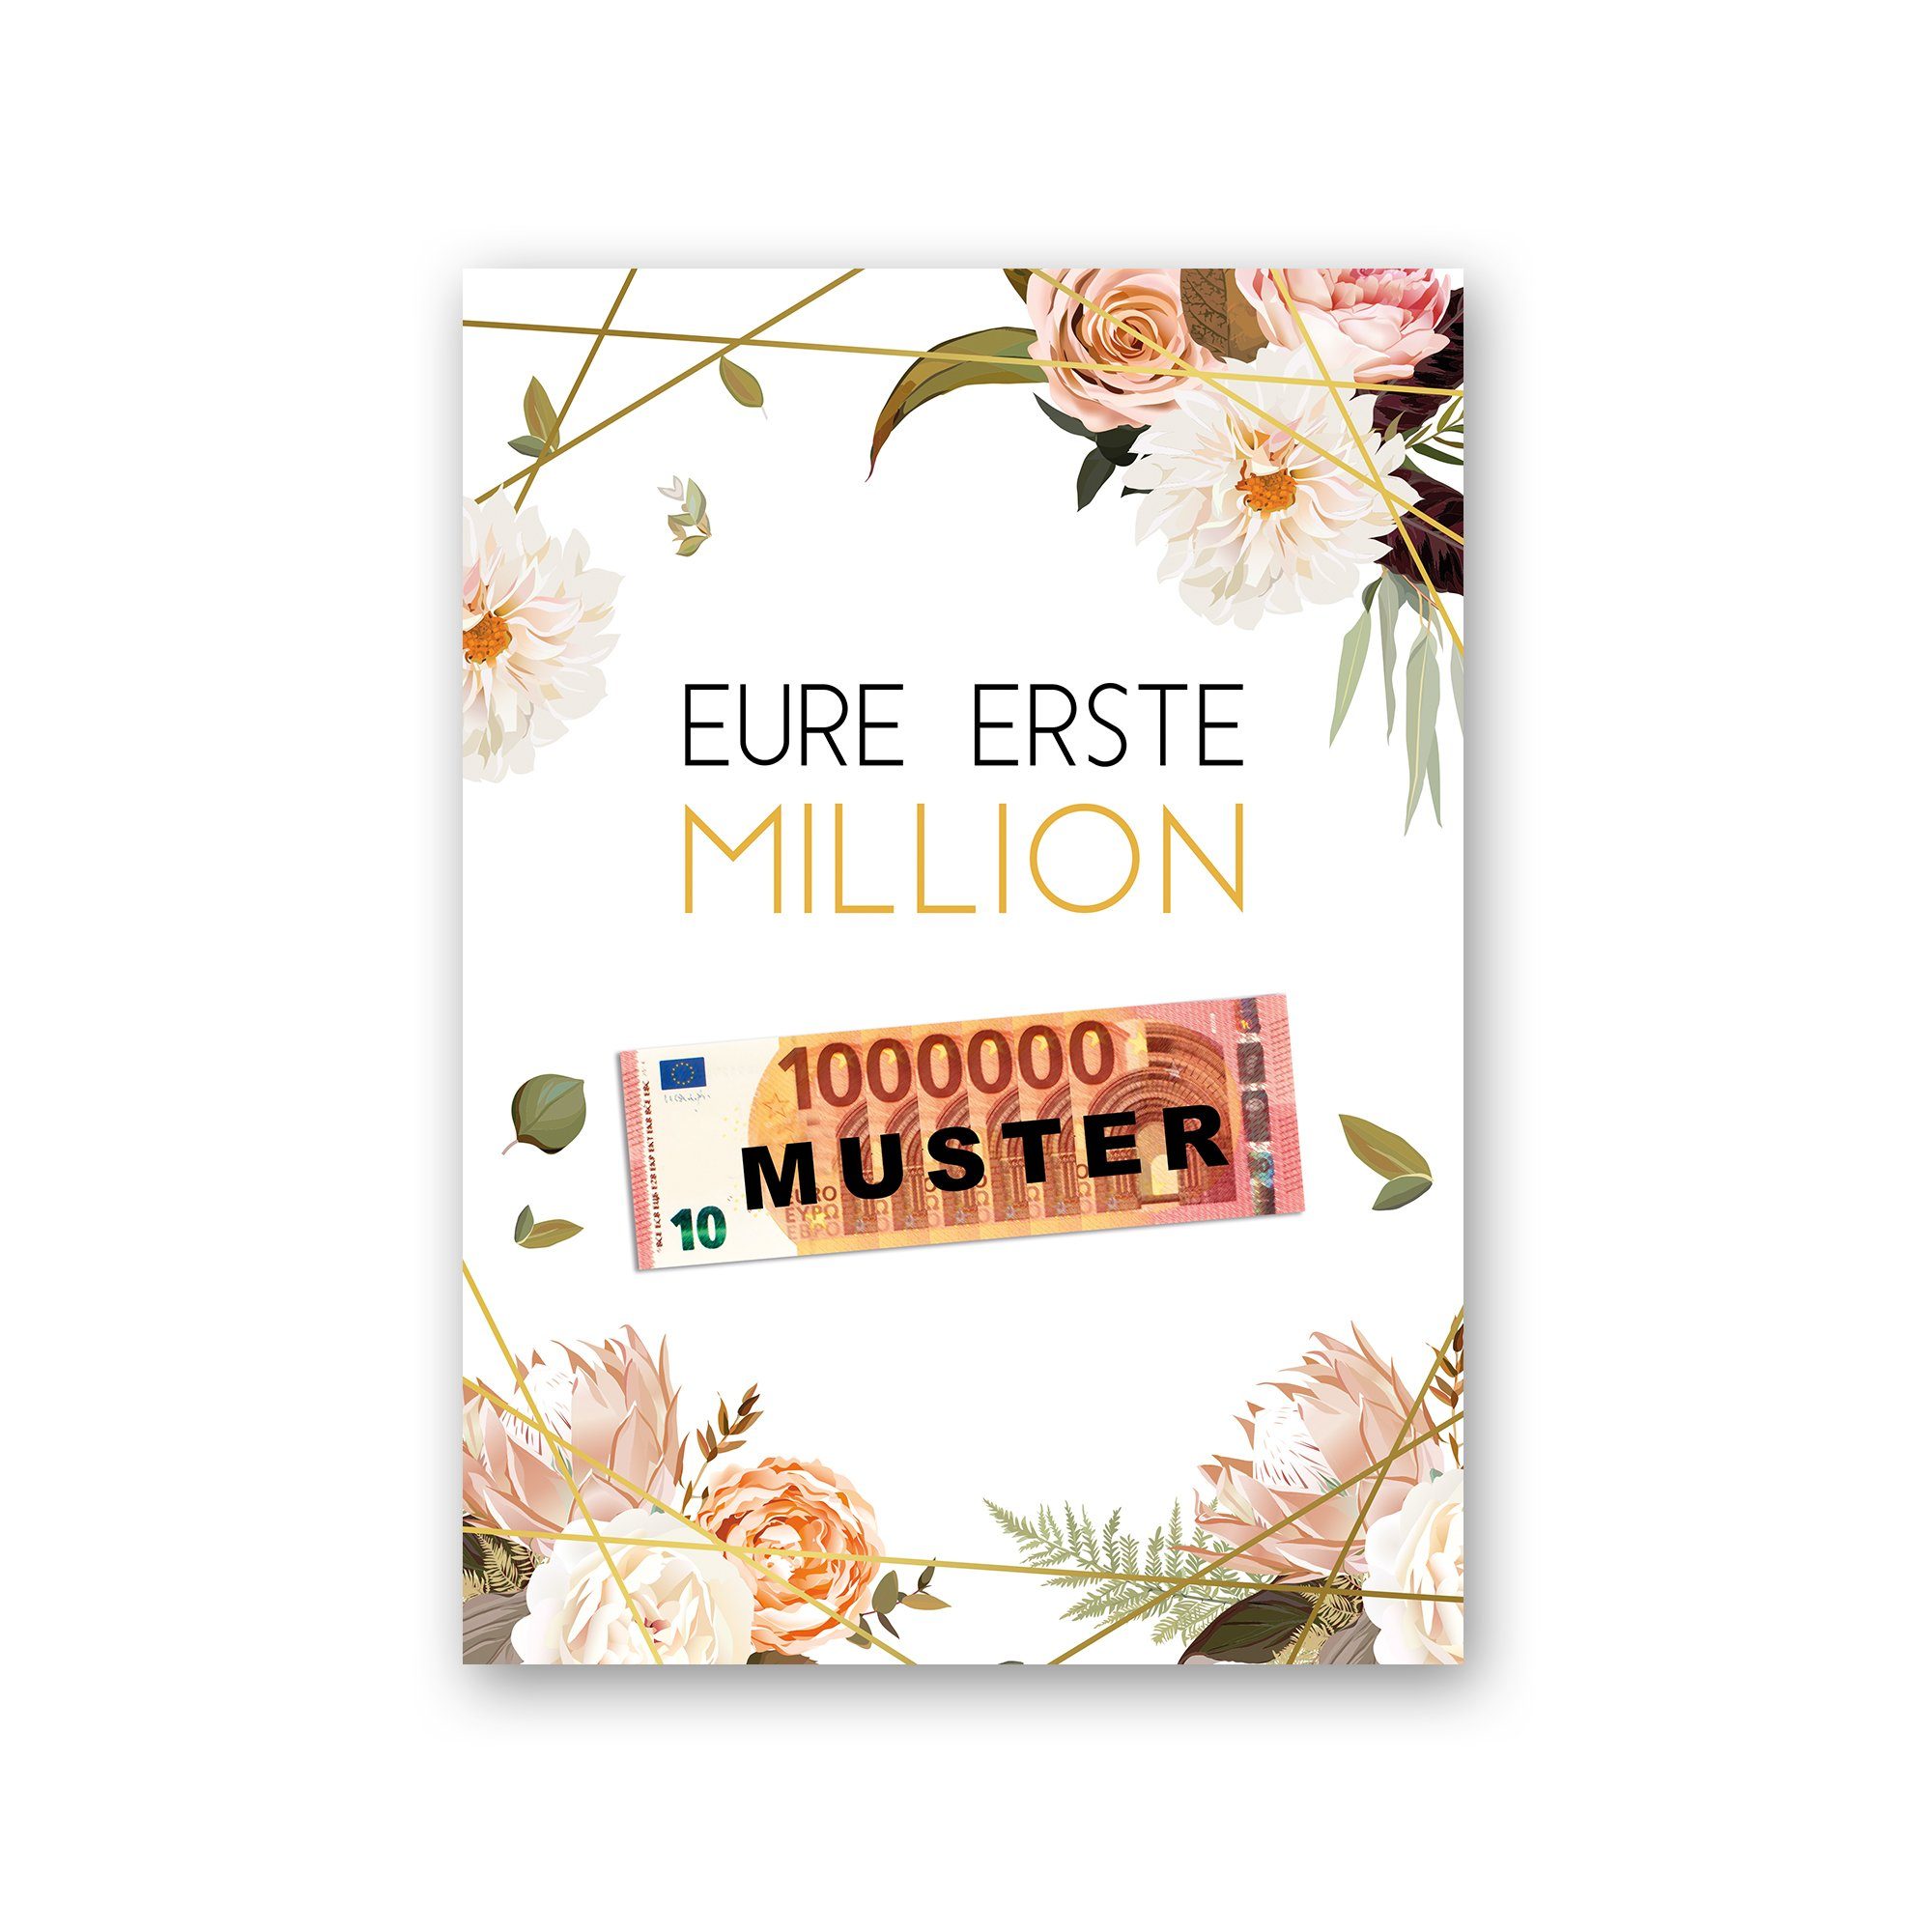 Kreative Feder Poster Premium Poster „Eure erste Million“ - Kunstdruck mit Rosen-Design, Blumen, optional mit Rahmen; wahlweise DIN A4 oder DIN A3 schwarzer Rahmen